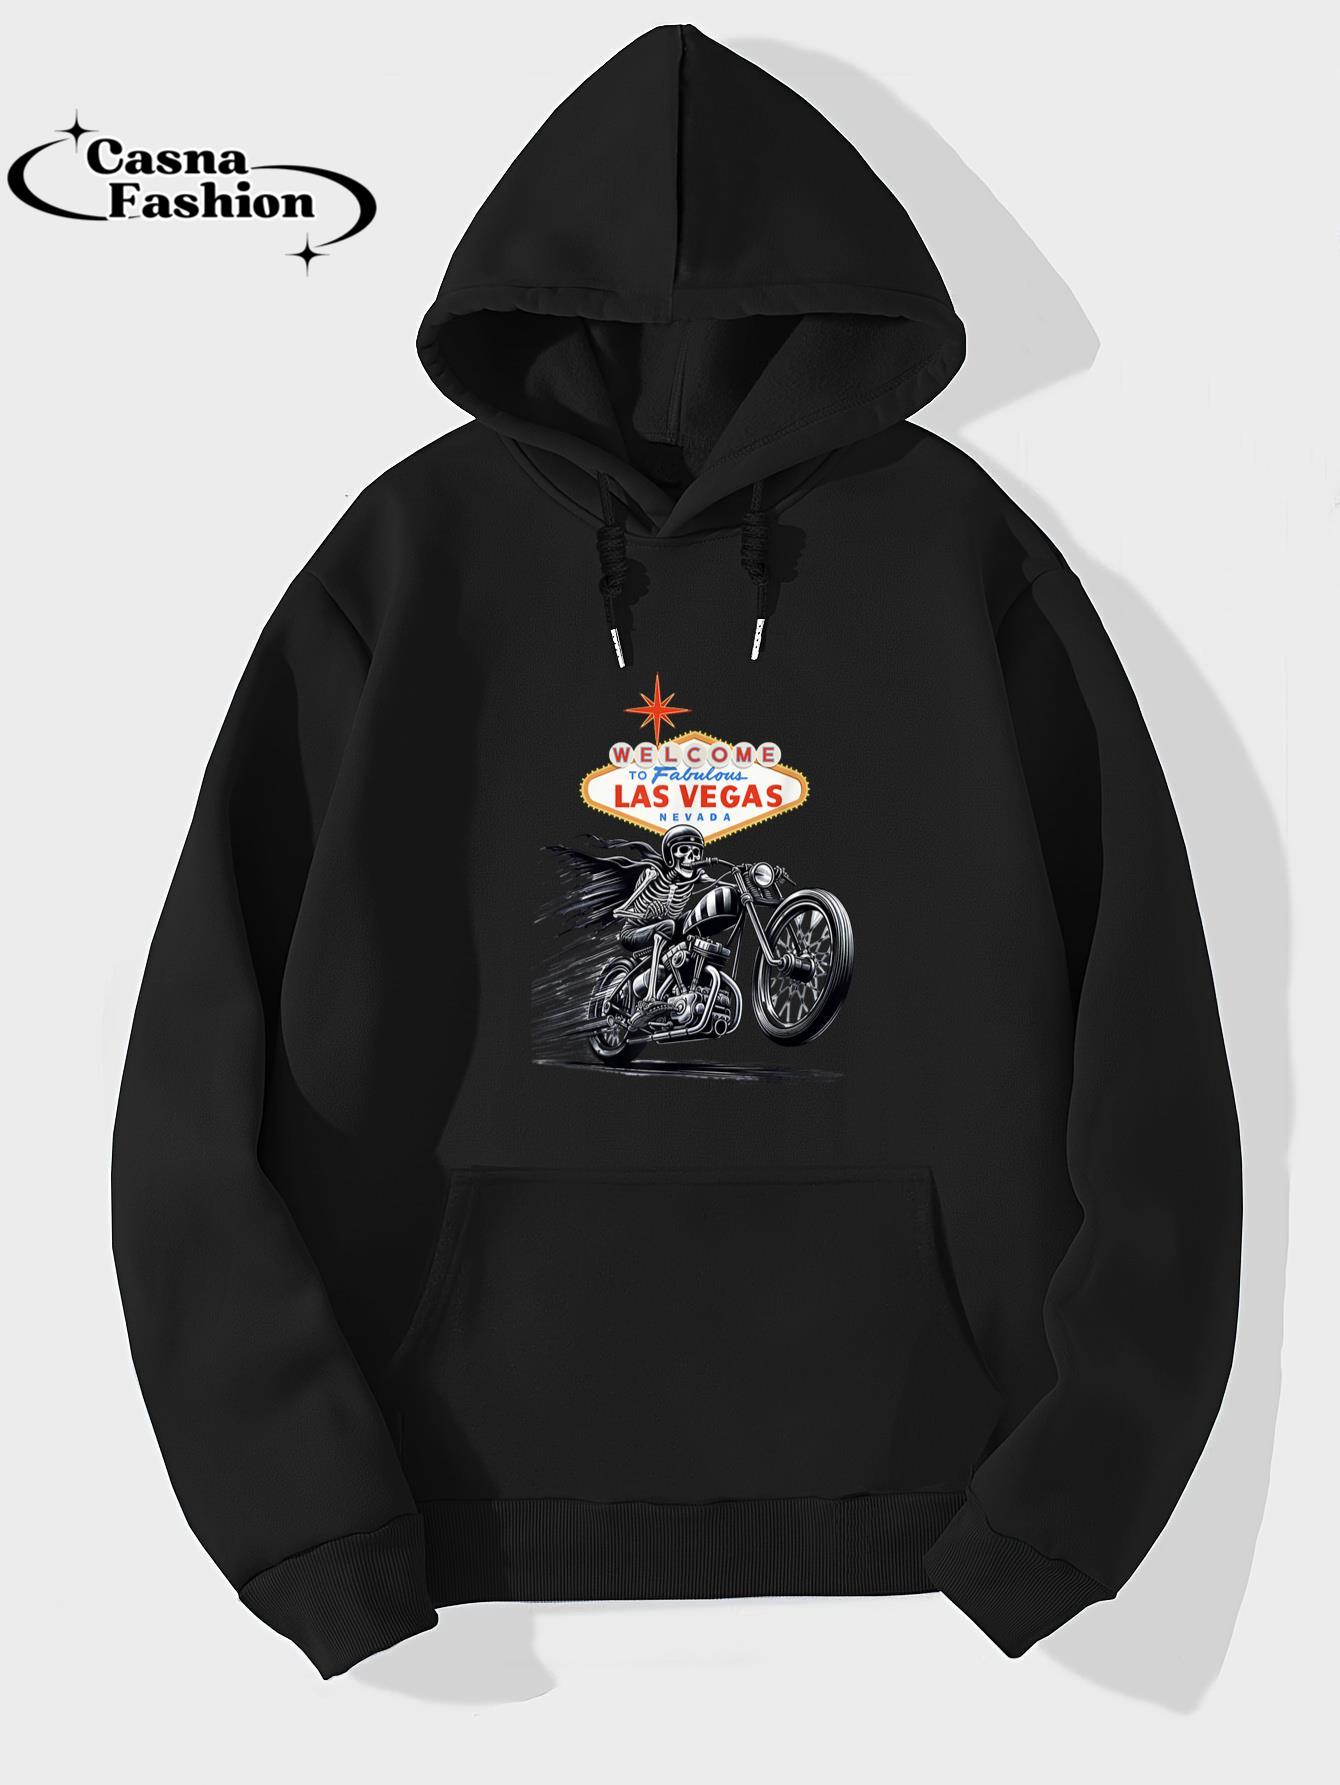 casnafashion_Hoodie_Retro Las Vegas Motorcycle Biker Welcome Sign Souvenir T-Shirt_hoodie_black hoodie